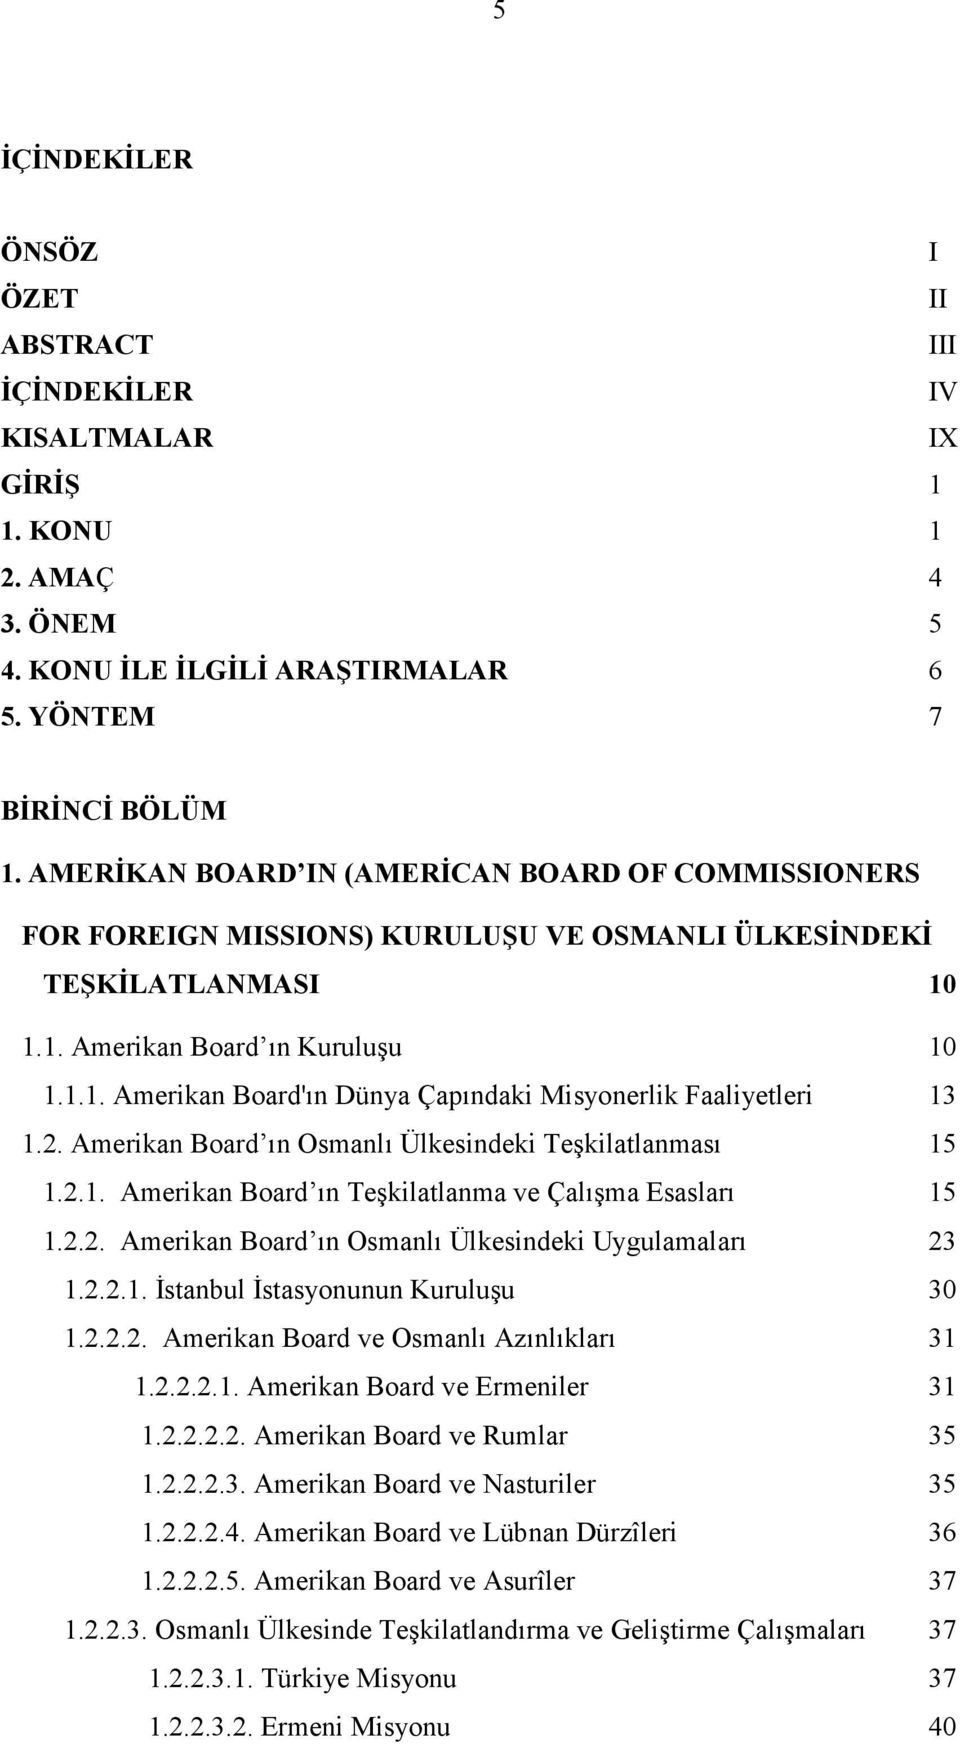 2. Amerikan Board ın Osmanlı Ülkesindeki Teşkilatlanması 15 1.2.1. Amerikan Board ın Teşkilatlanma ve Çalışma Esasları 15 1.2.2. Amerikan Board ın Osmanlı Ülkesindeki Uygulamaları 23 1.2.2.1. İstanbul İstasyonunun Kuruluşu 30 1.